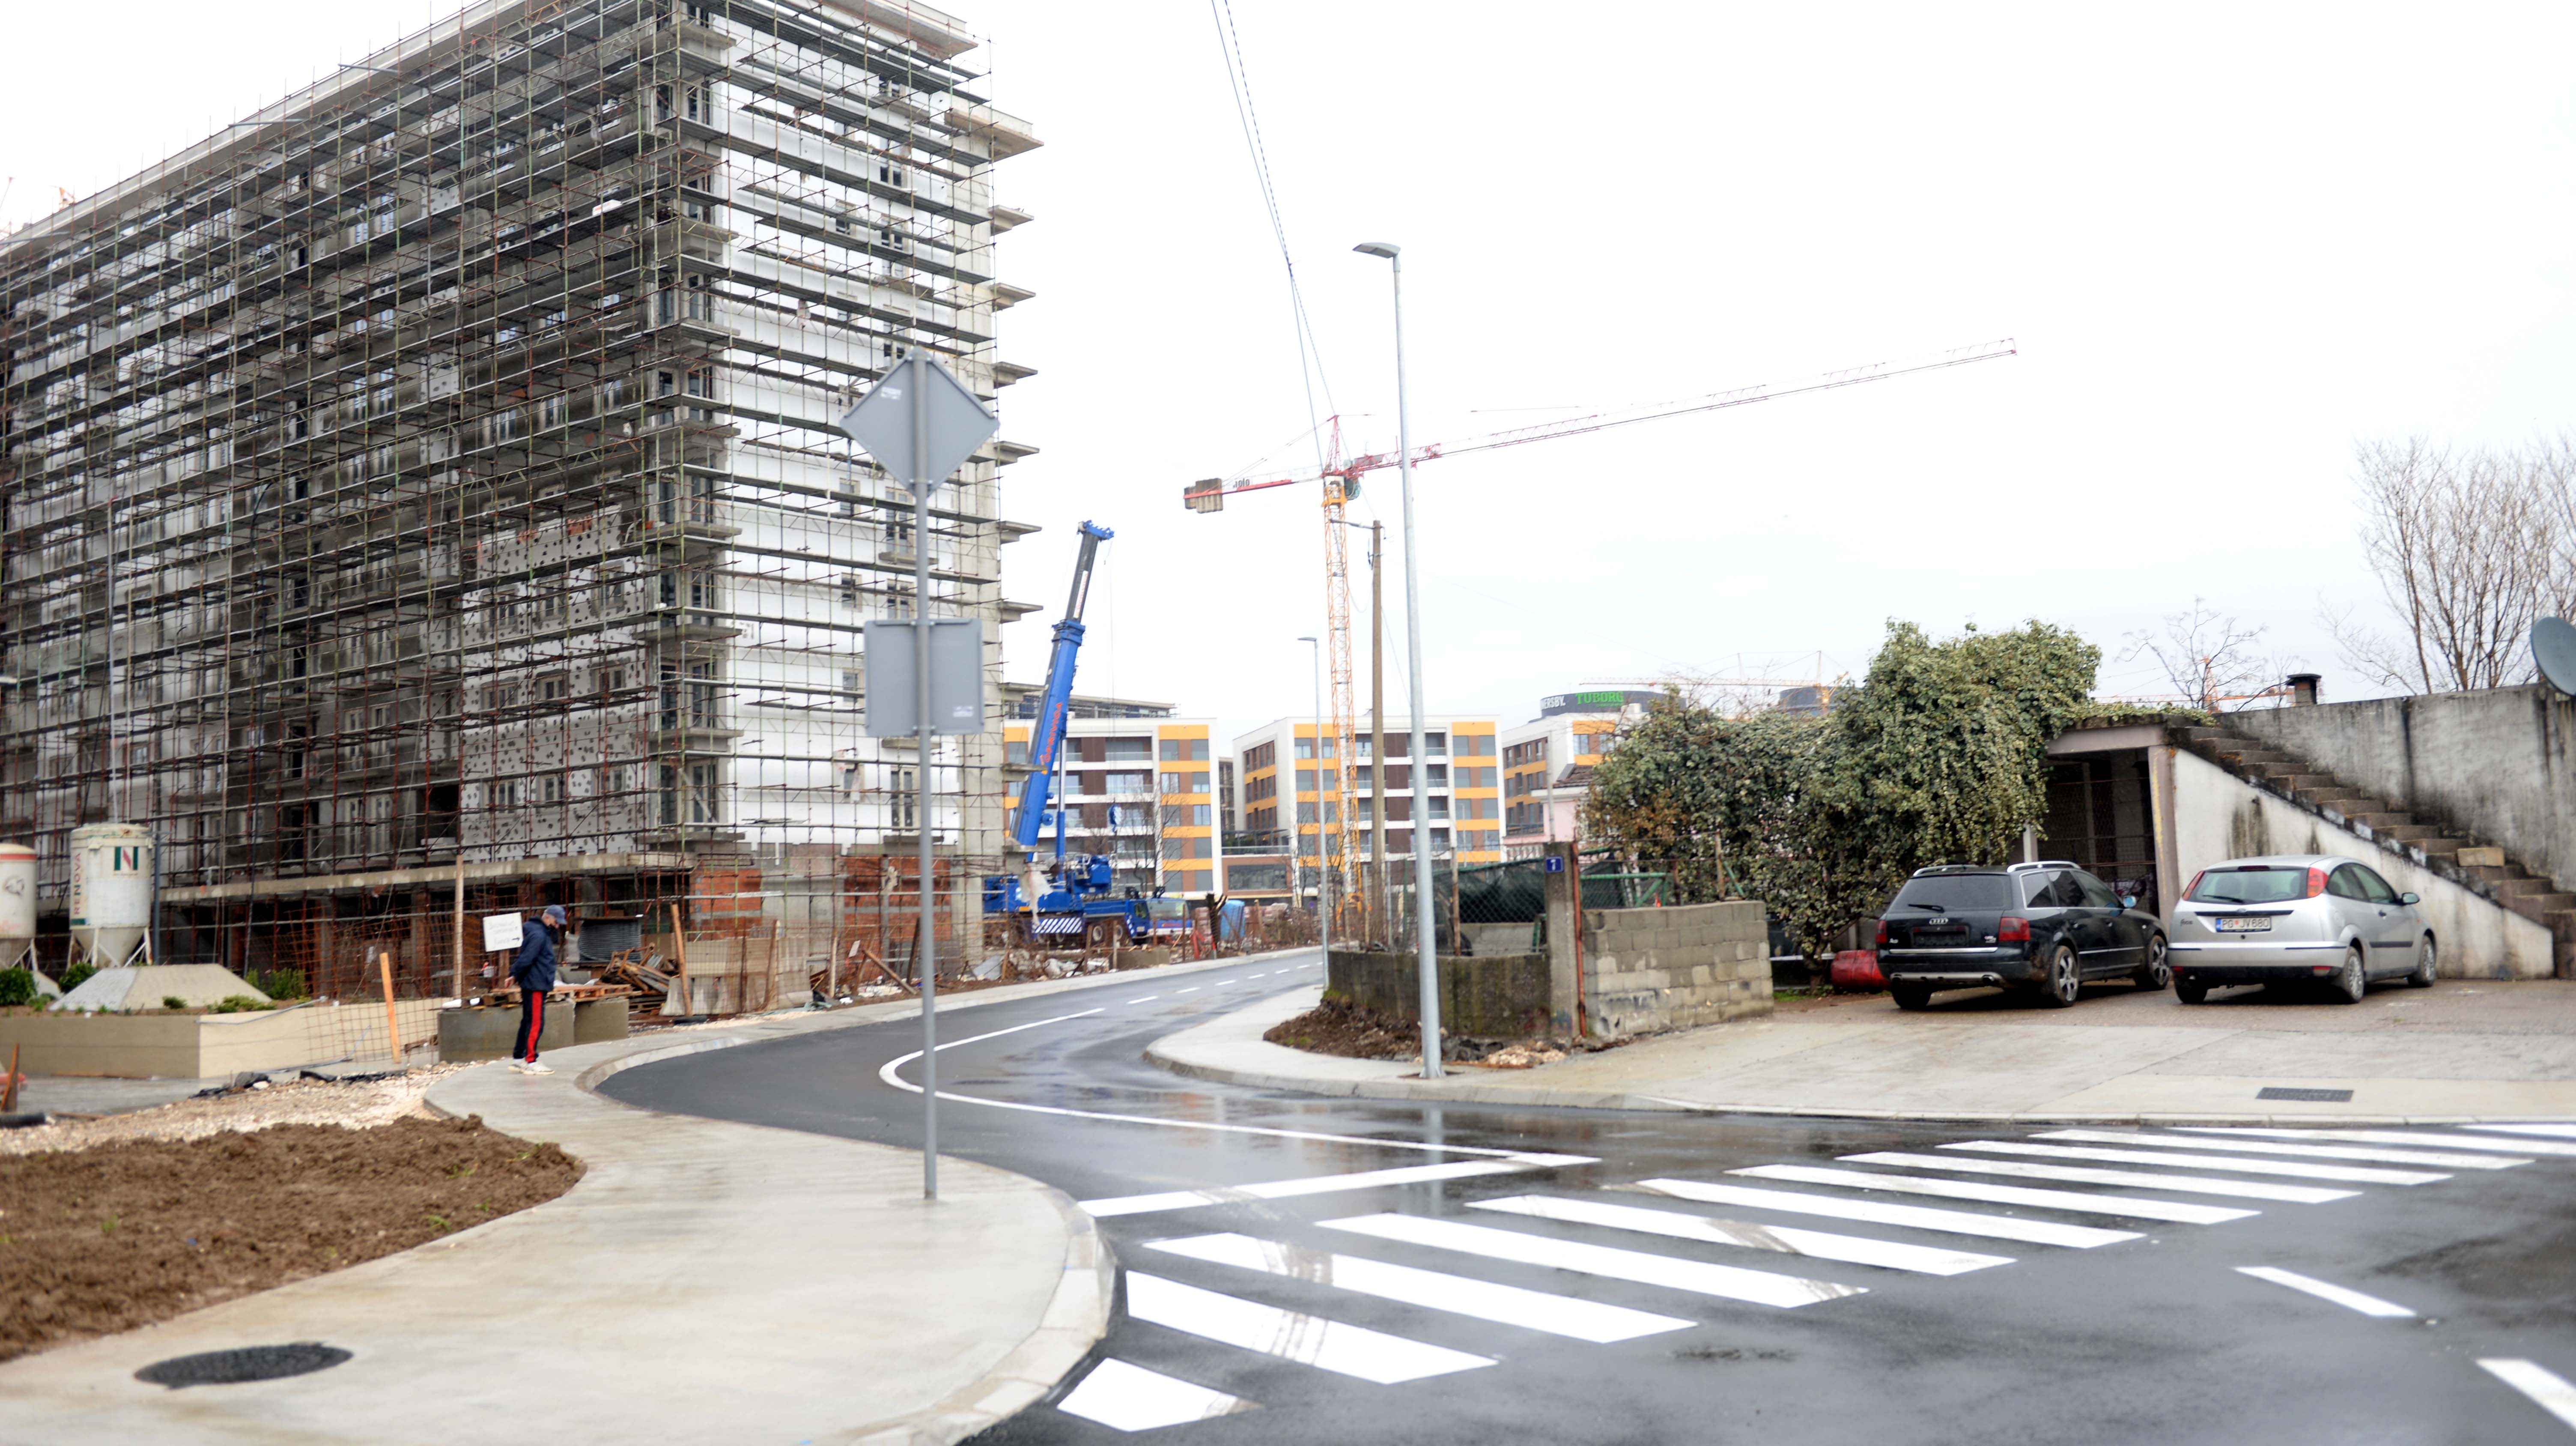 Završena rekonstrukcija Ulice Arsenija Boljevića vrijedna 390.000 eura; Najkraća saobraćajna veza između Ankarskog bulevara i Ulice Marka Radovića dobila potpuno novi izgled